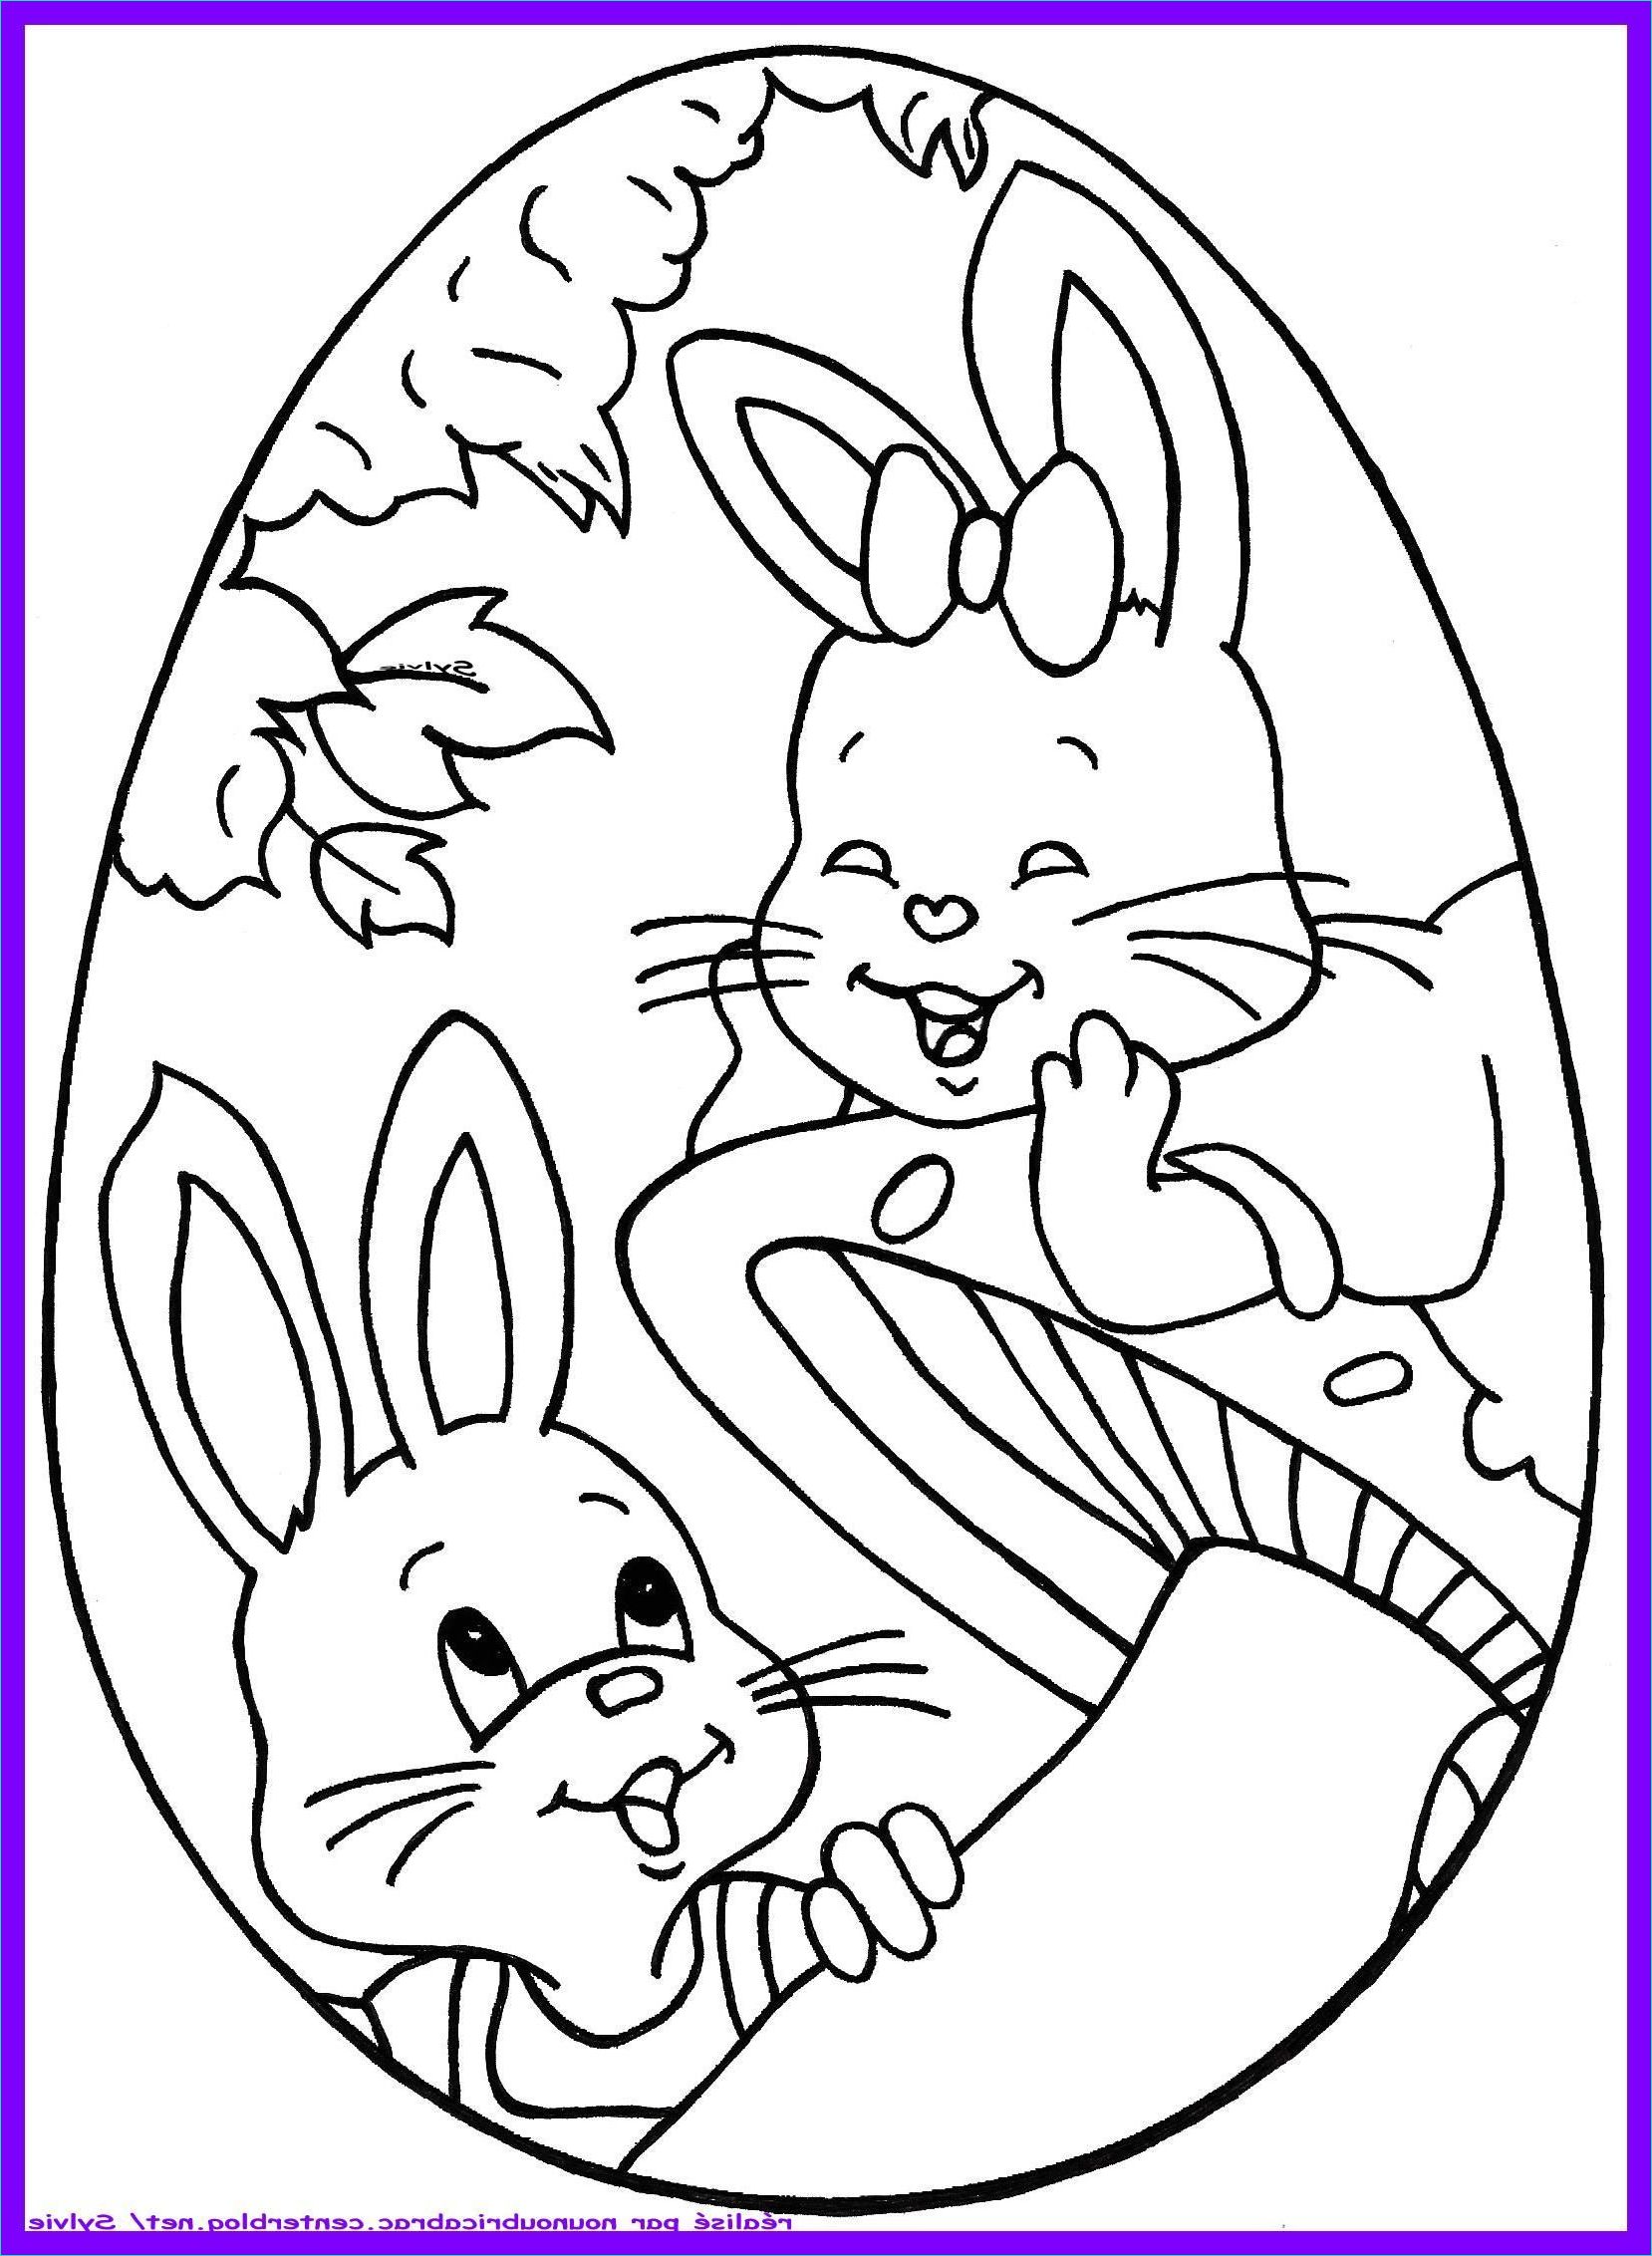 Oeuf de Paques Adorables petits lapins a colorier